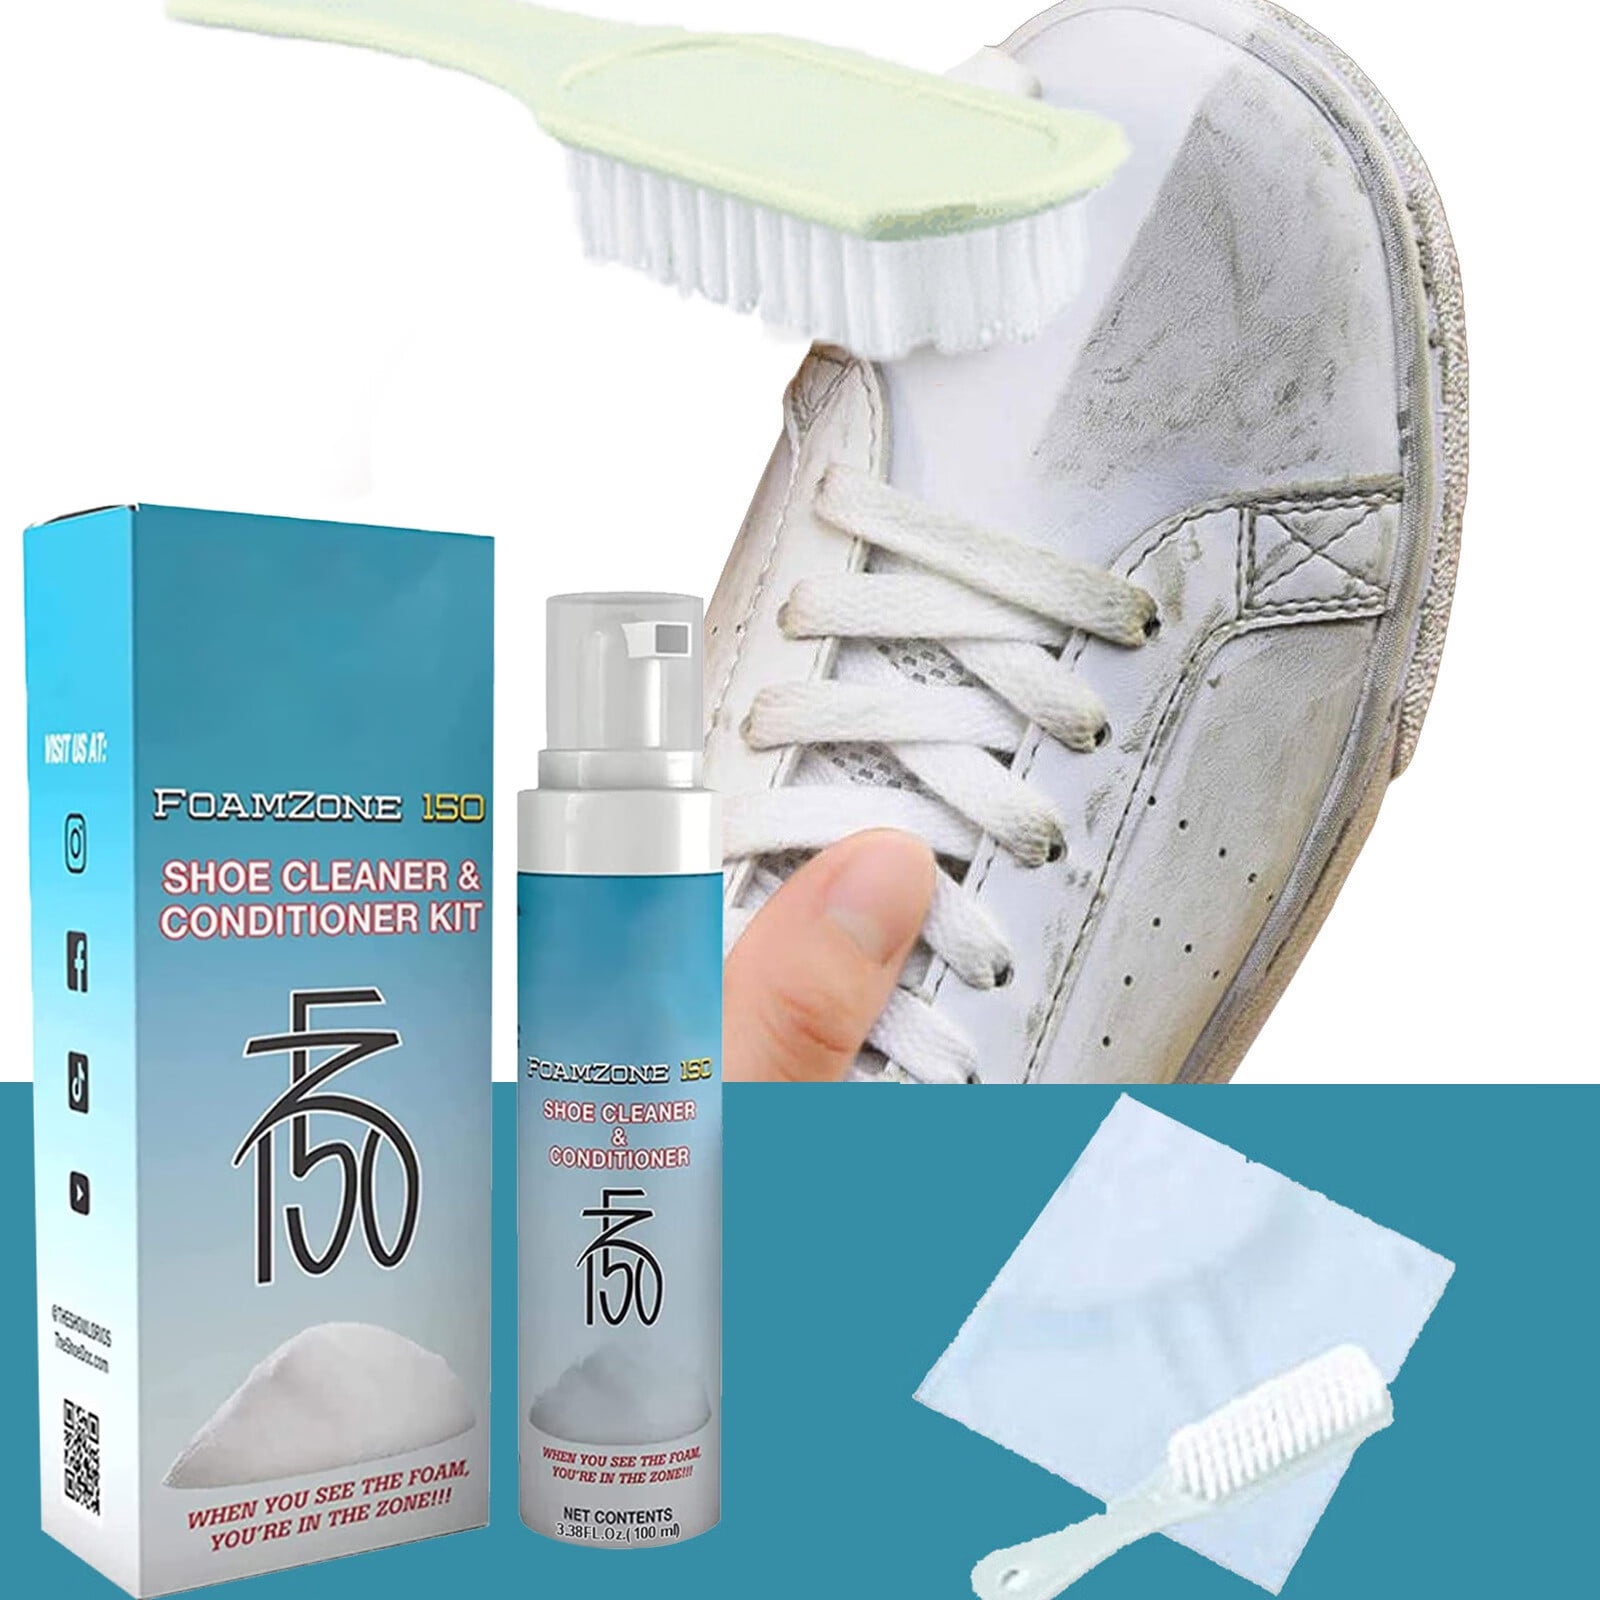 Foam Shoe Cleaner (5 Oz.) – Shoozas